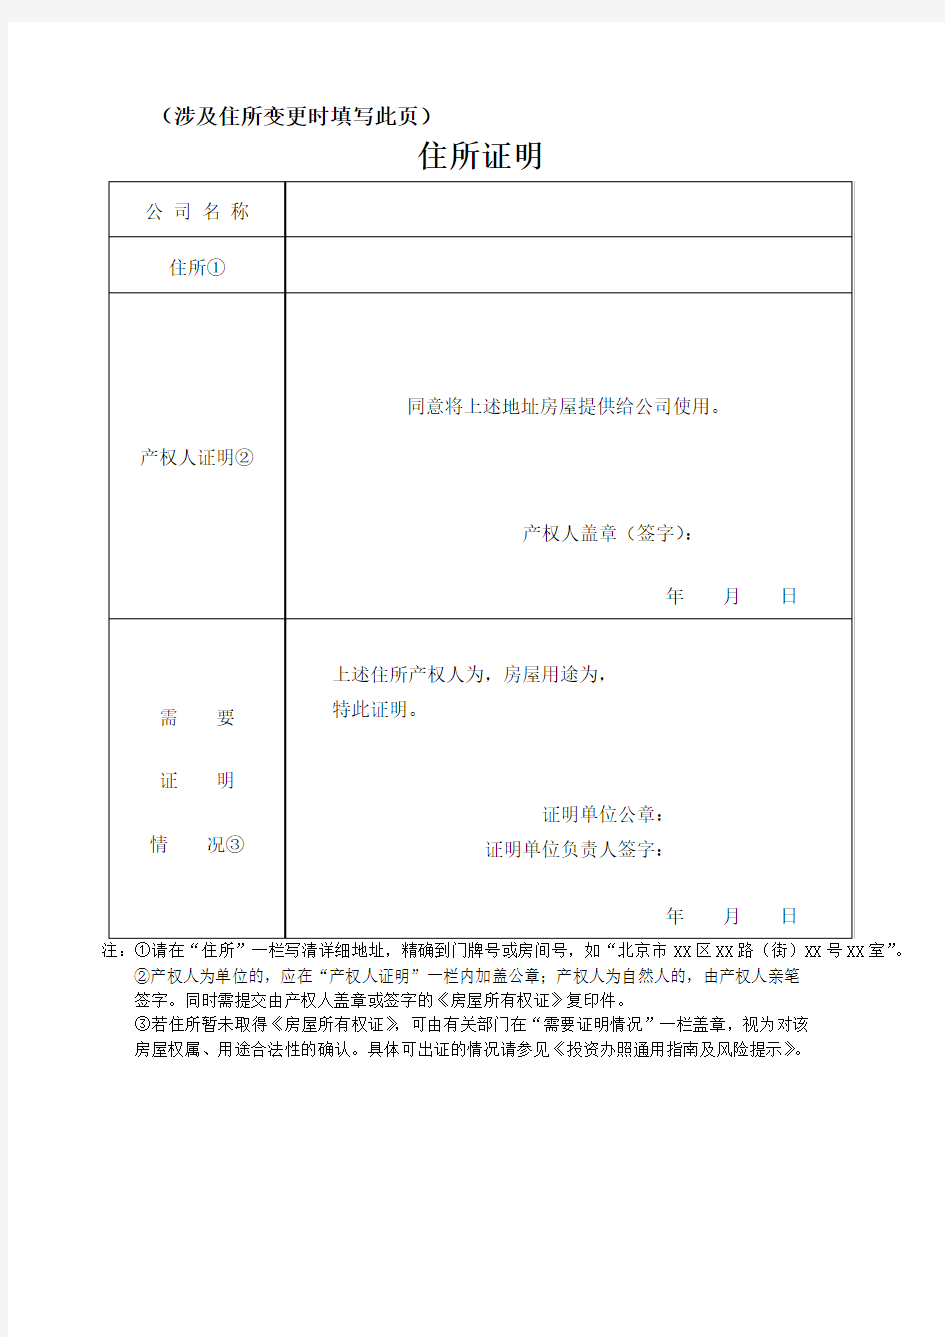 住所证明-北京工商局表格提供表格